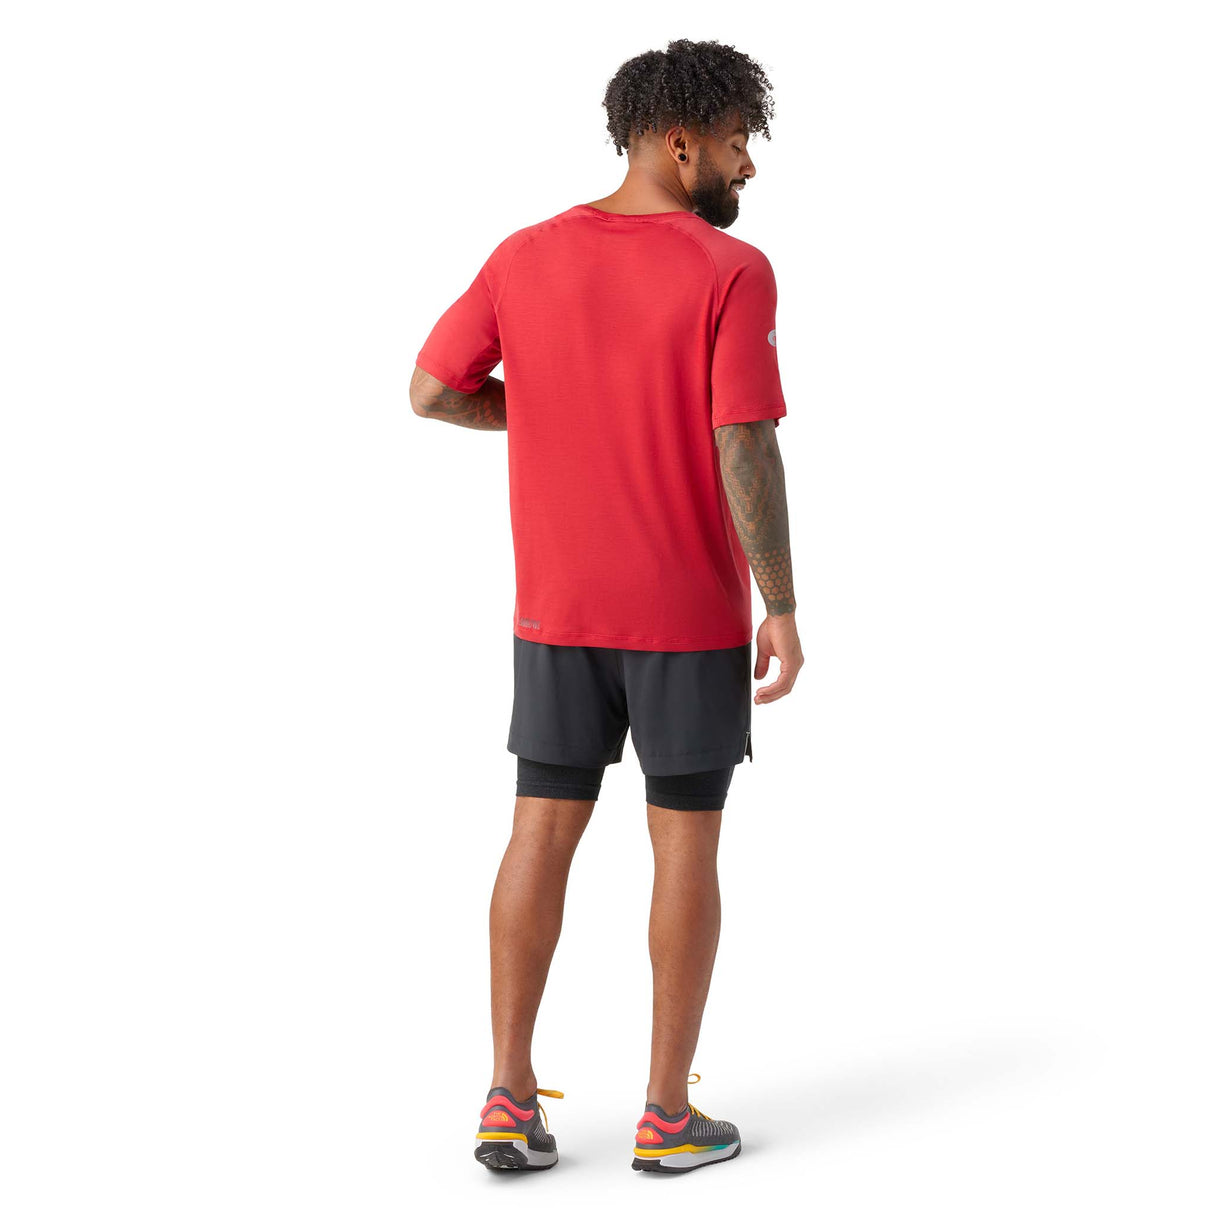 Smartwool Merino Sport 120 t-shirt à manches courtes homme rouge rythmique dos